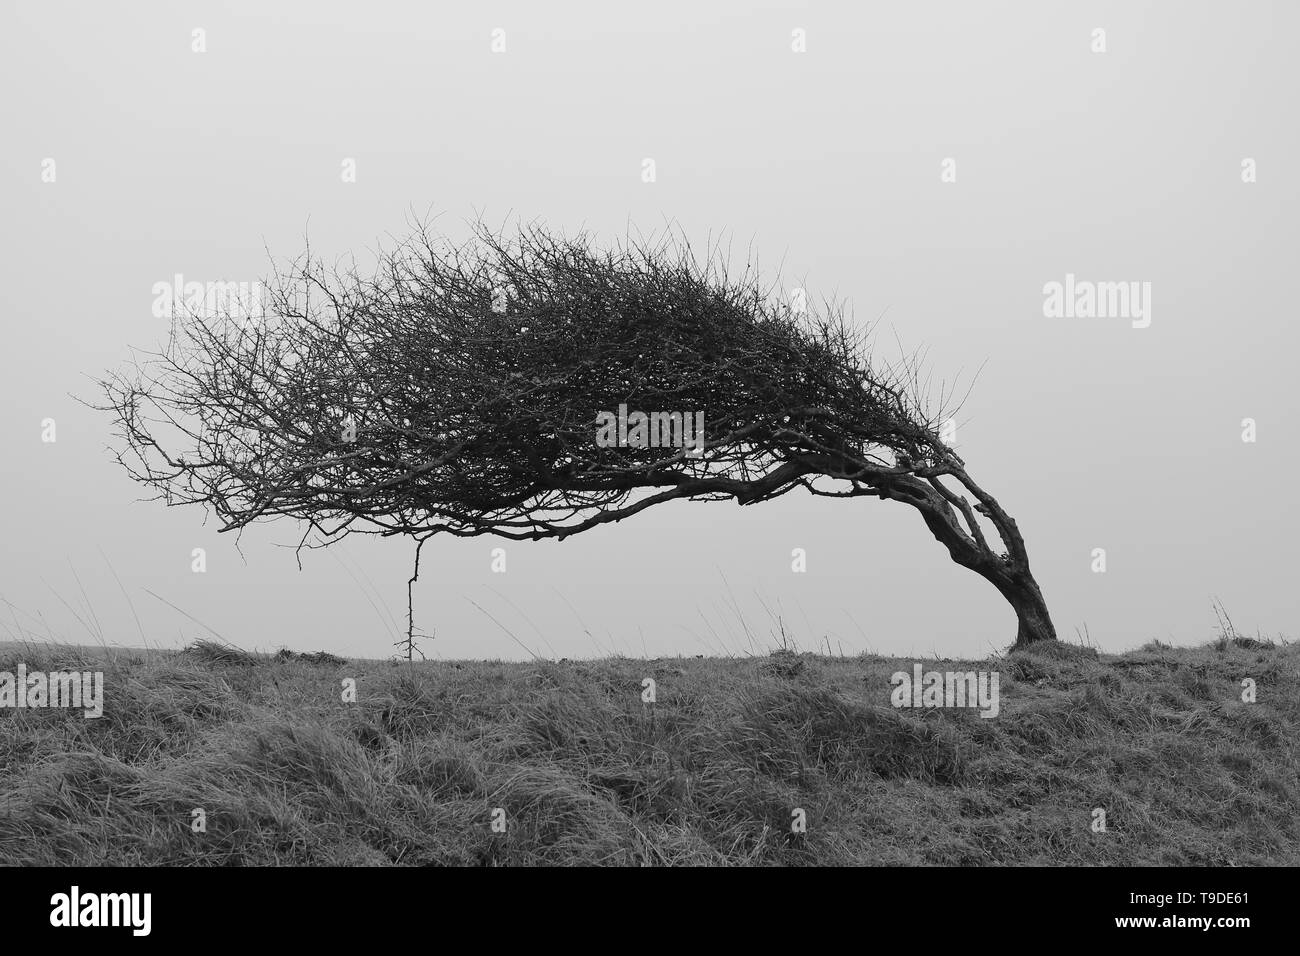 Un solo árbol dobladas, erosionadas por fuertes vientos costeros. Paisaje monocromo de la fotografía en blanco y negro. Foto de stock